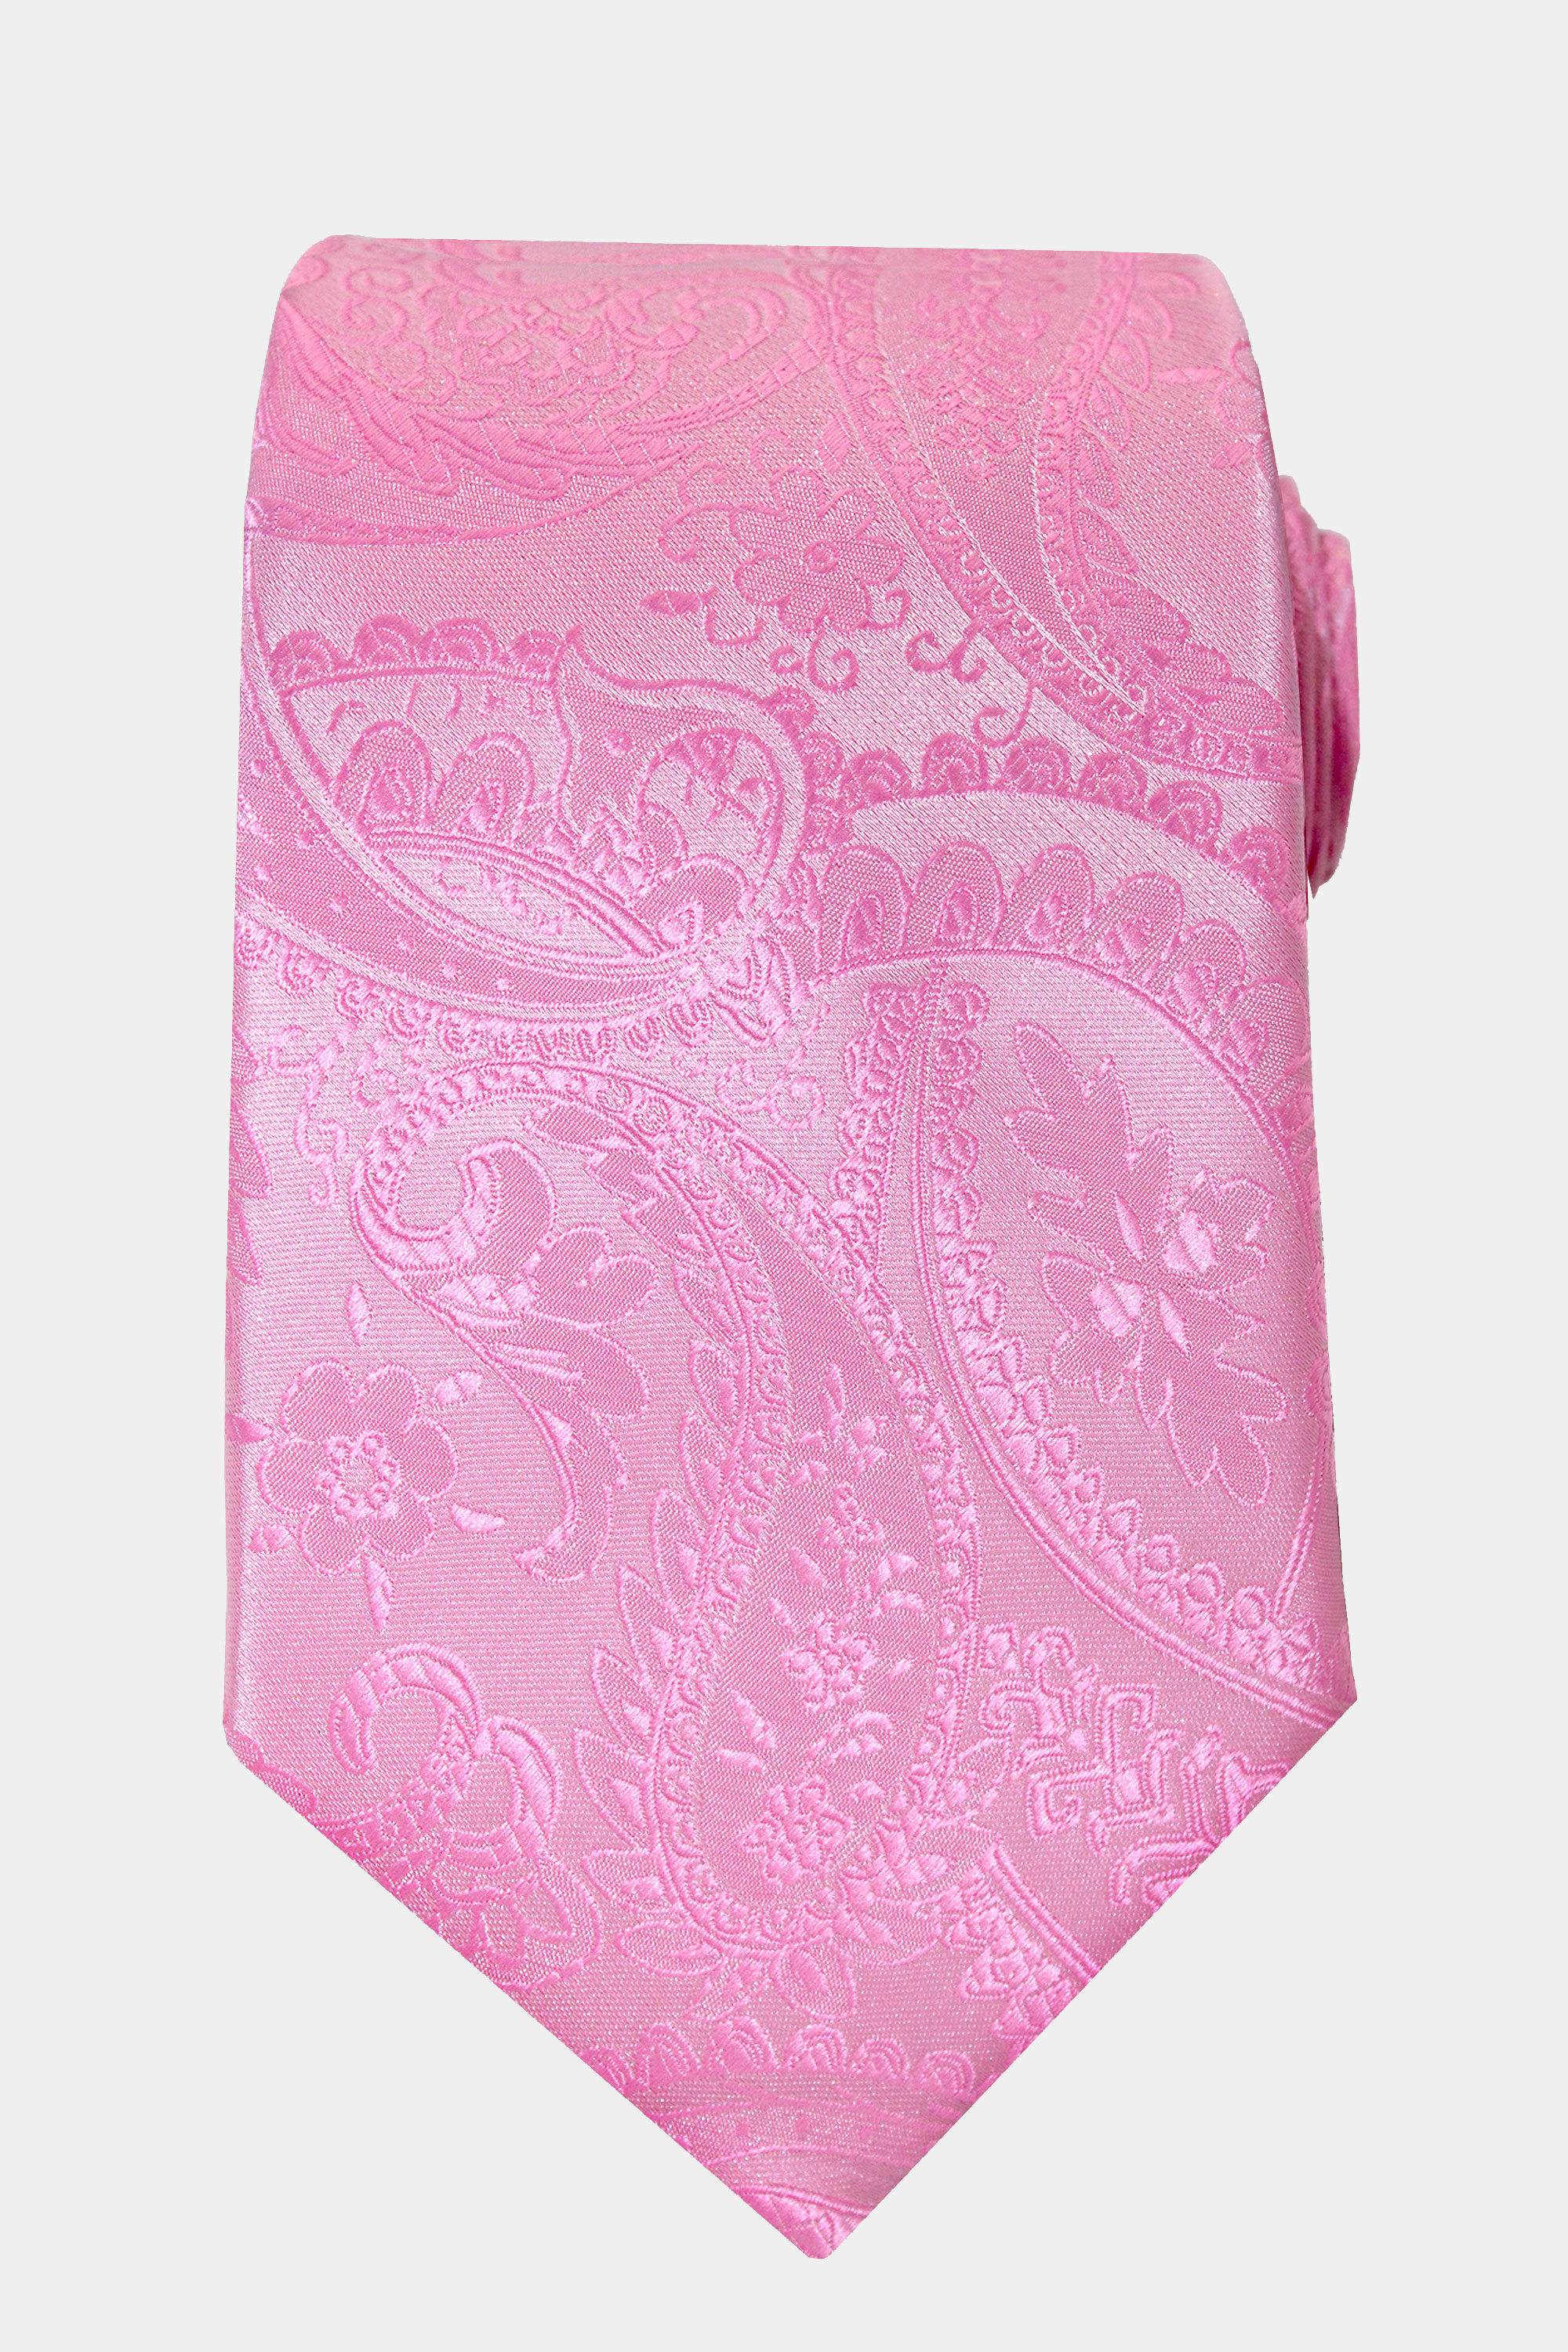 Link-Pink-Paisley-Tie-from-Gentlemansguru.com_